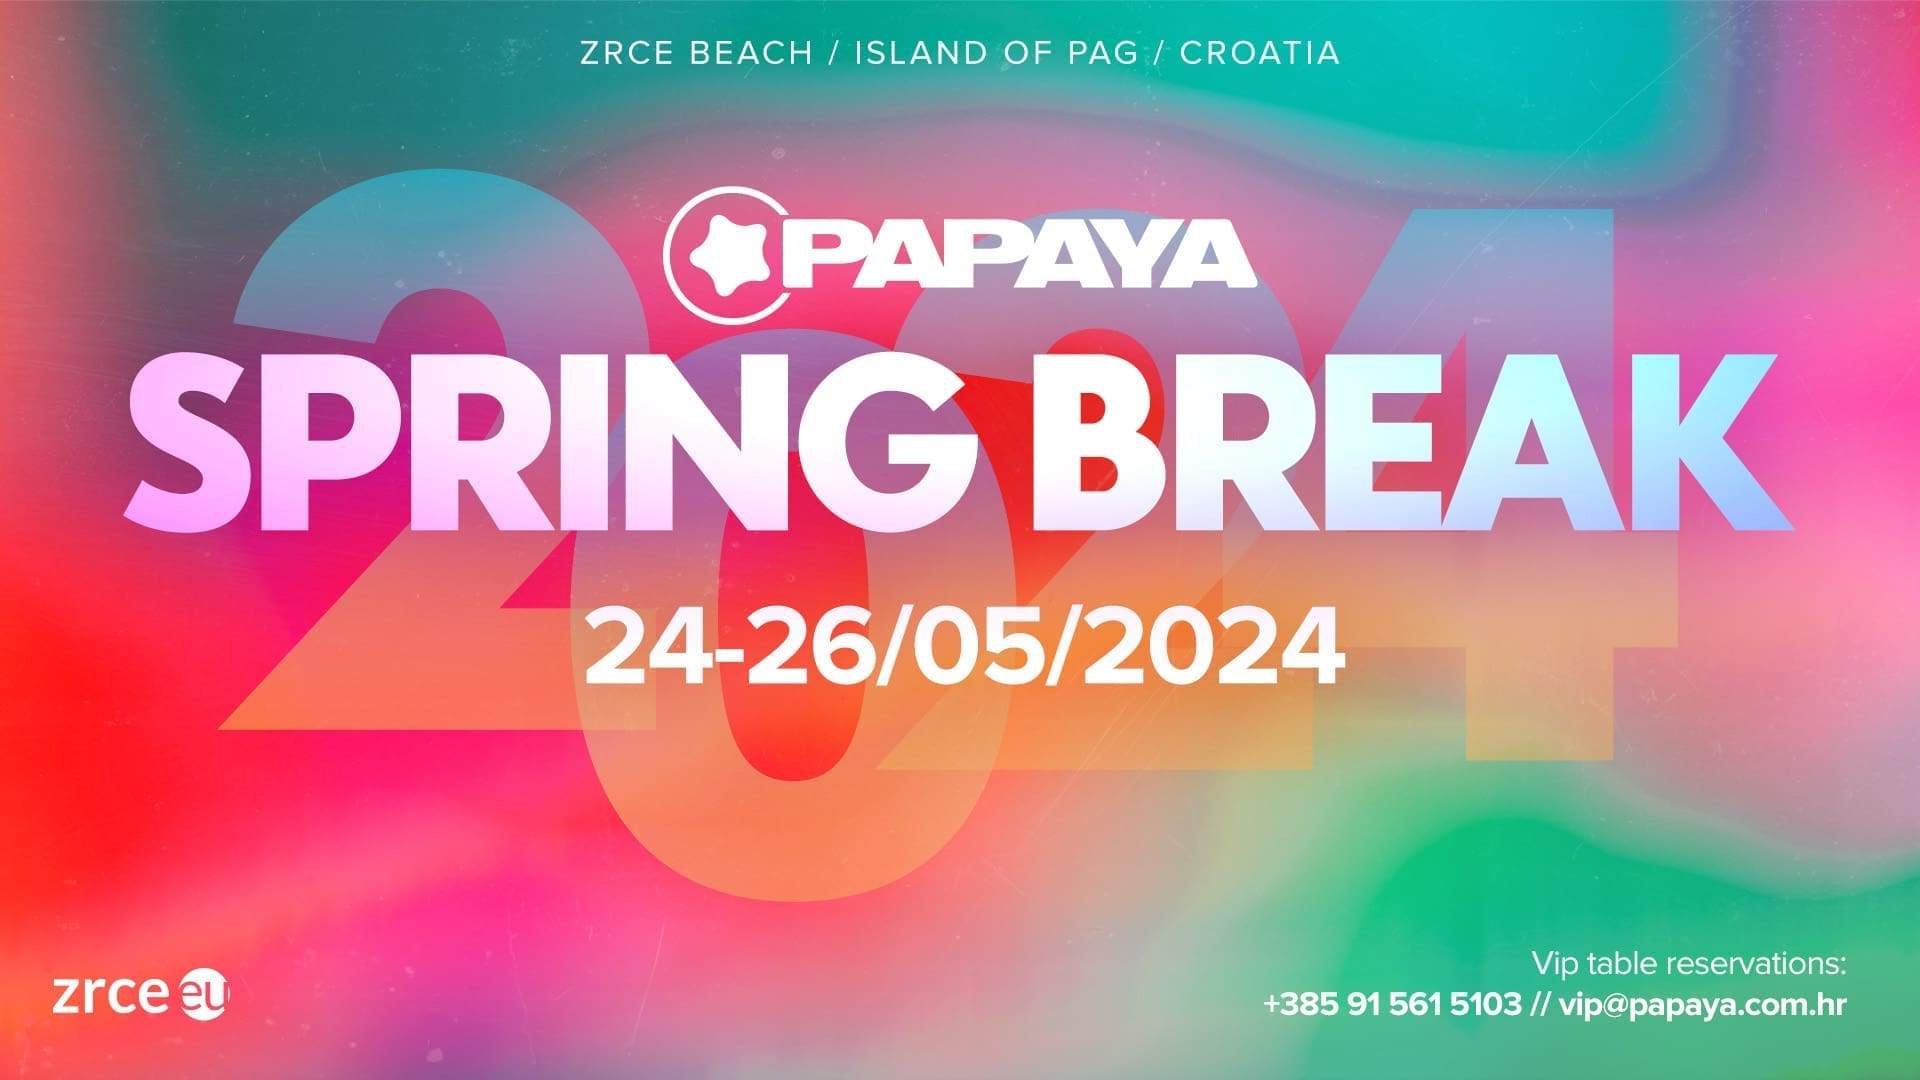 Papaya Spring Break - フライヤー表